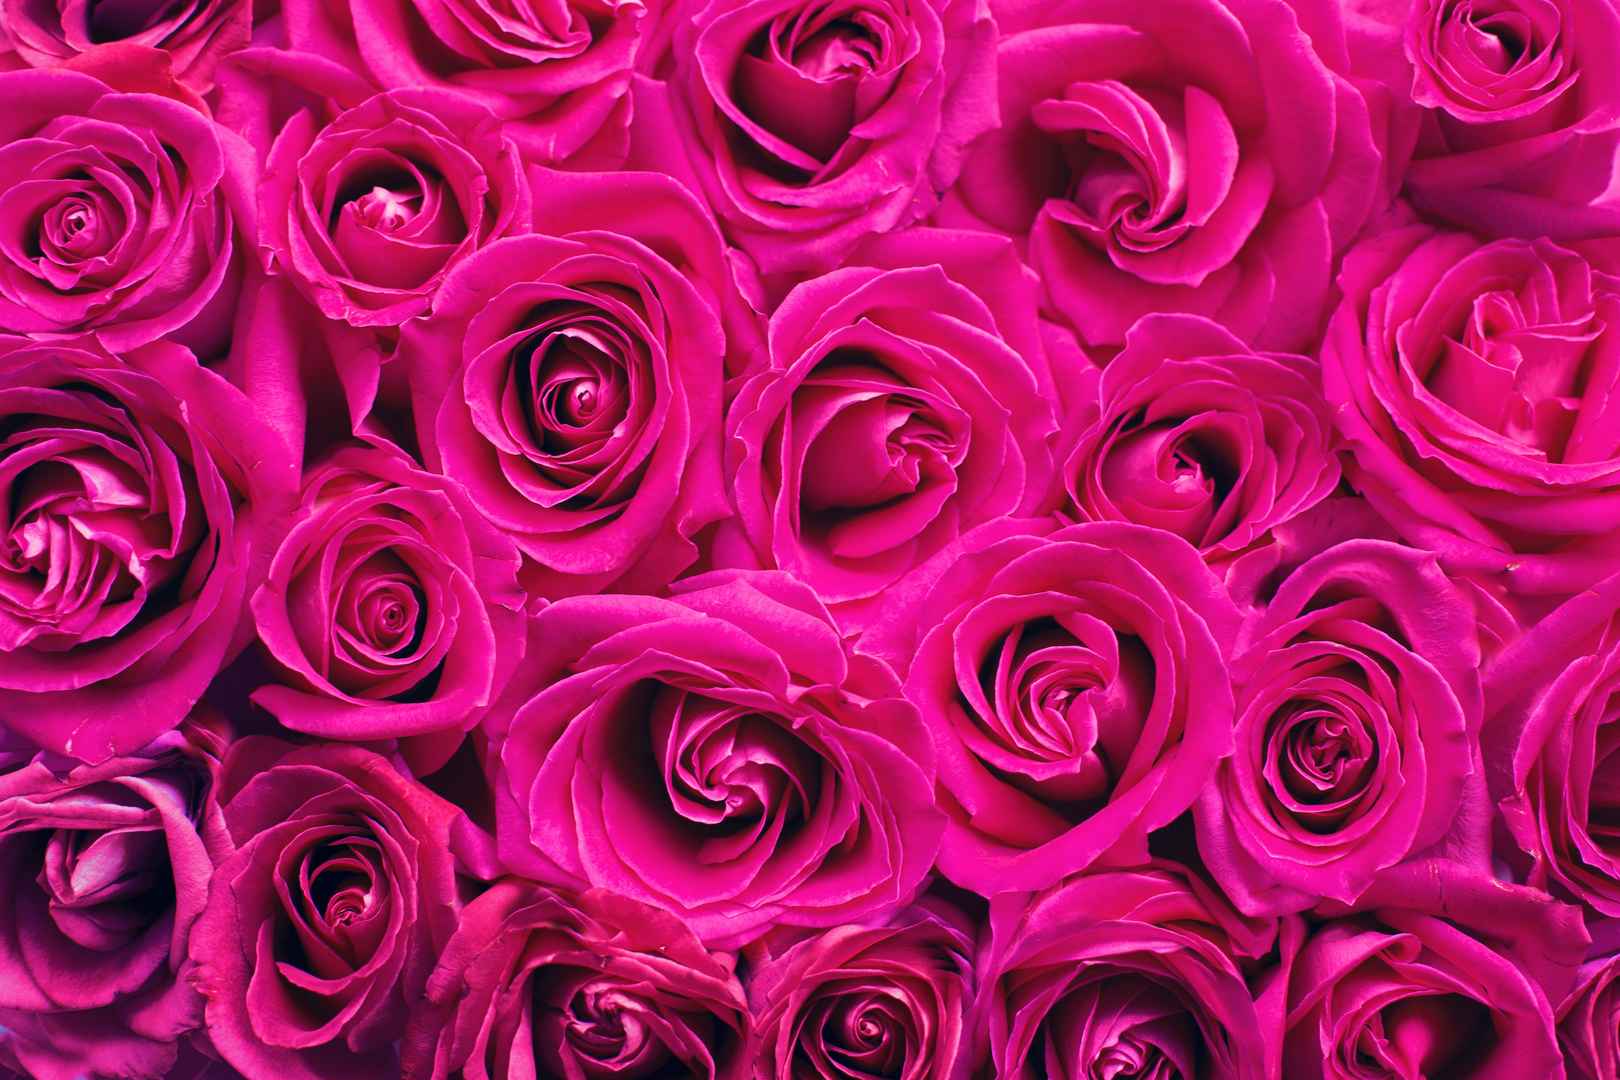 满屏粉色玫瑰浪漫壁纸